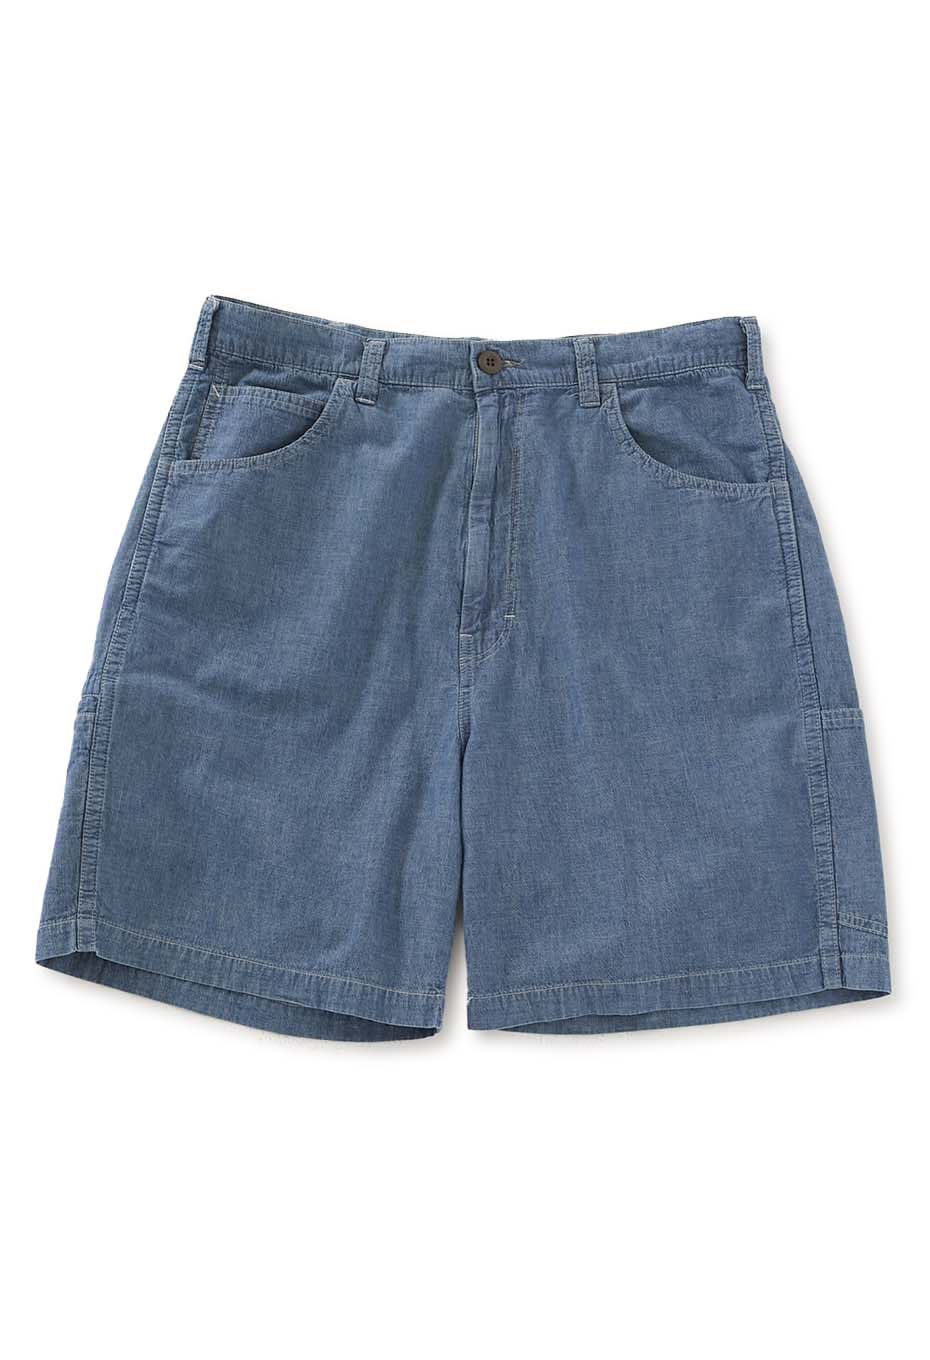 Original chambray fade waist string shorts